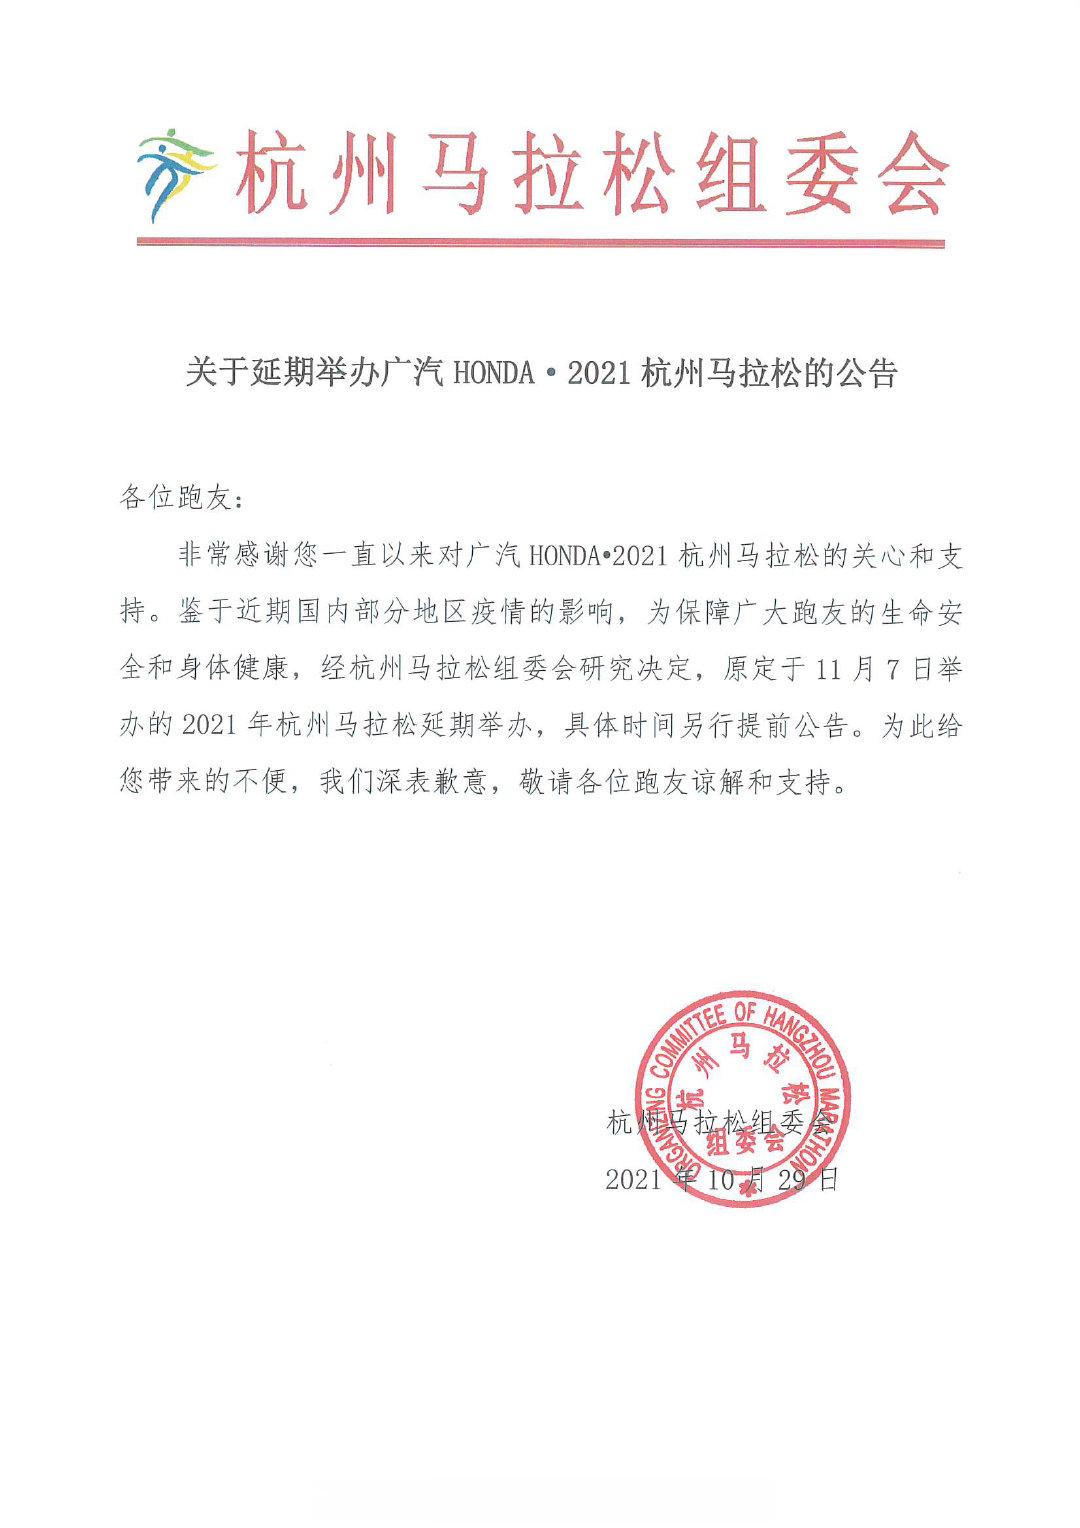 2021年杭州马拉松确认延期举办